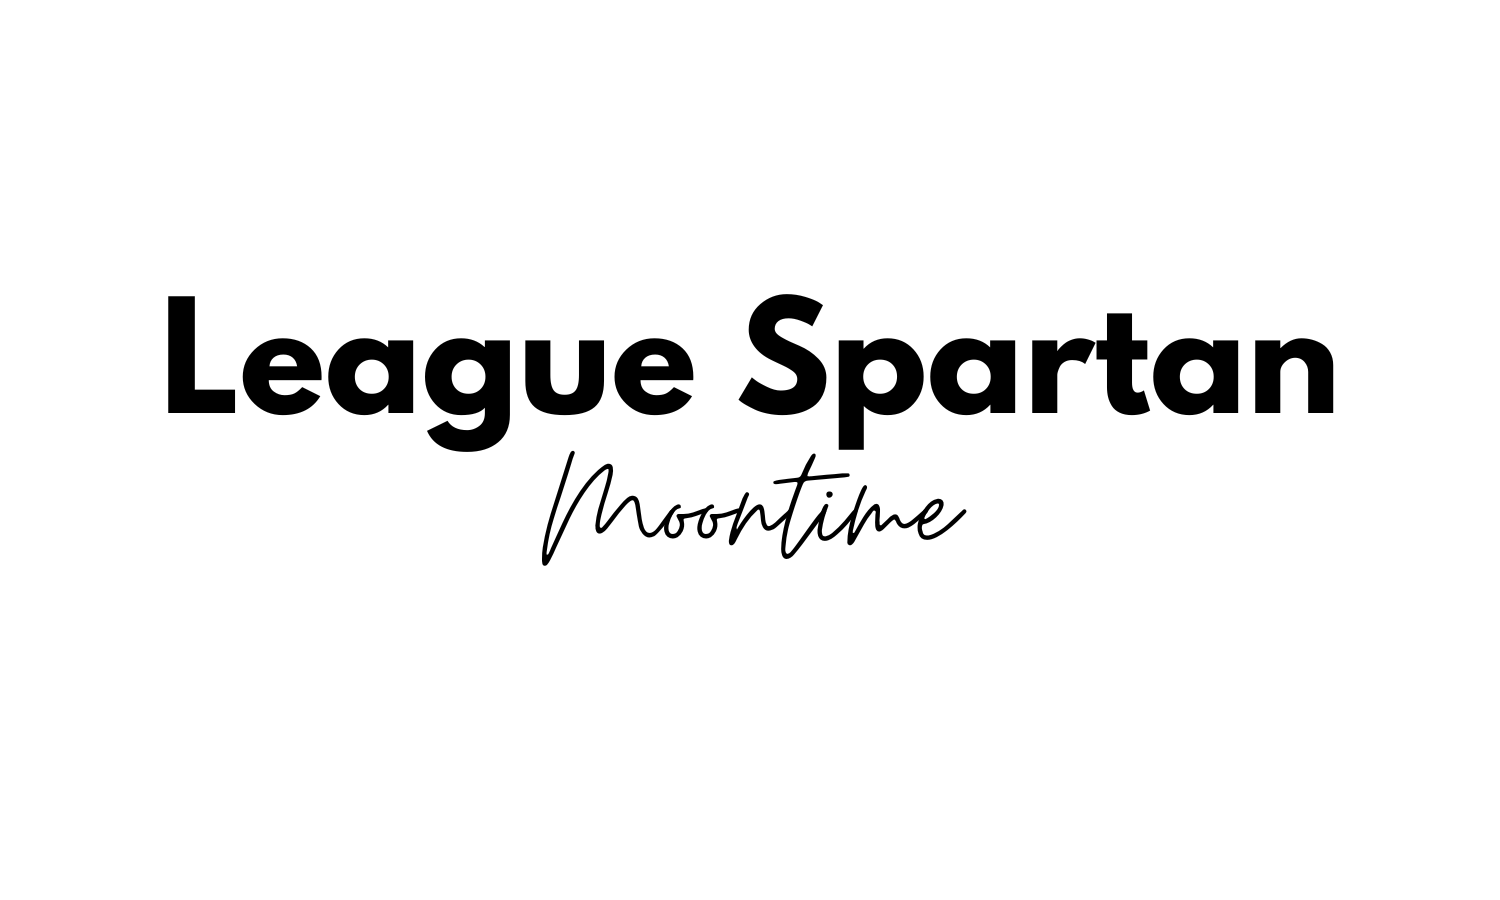 league spartan moontime font